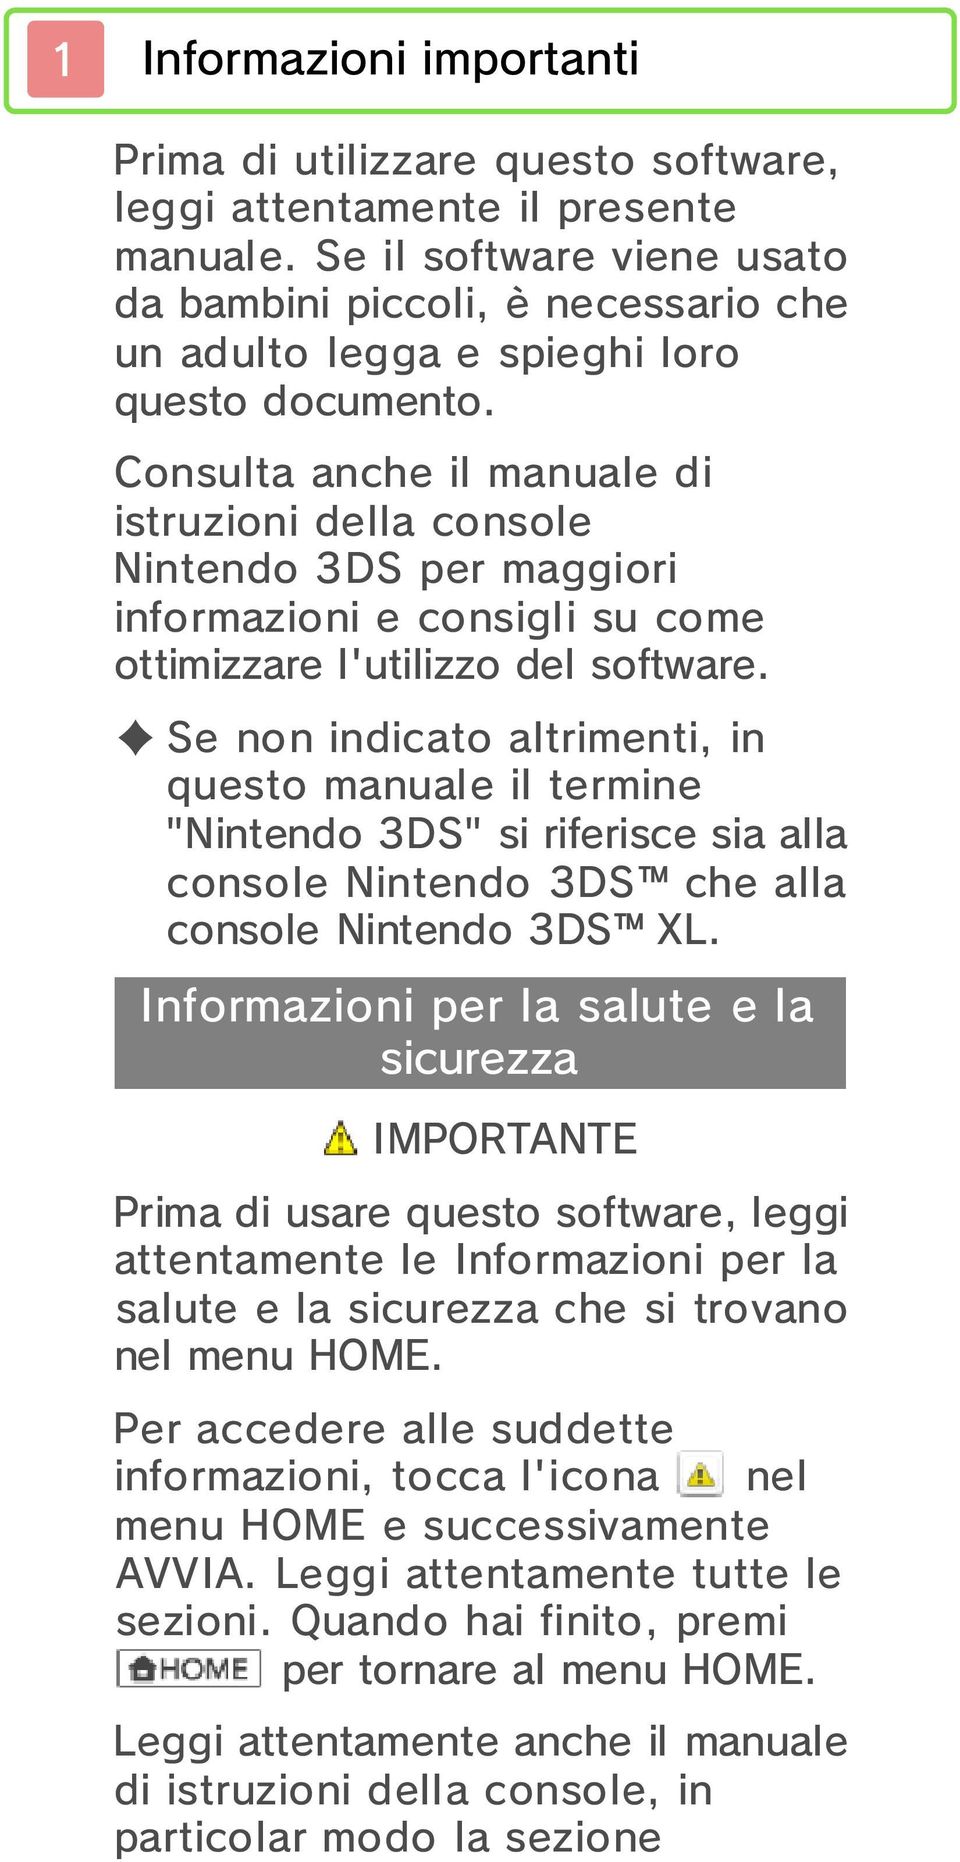 Consulta anche il manuale di istruzioni della console Nintendo 3DS per maggiori informazioni e consigli su come ottimizzare l'utilizzo del software.